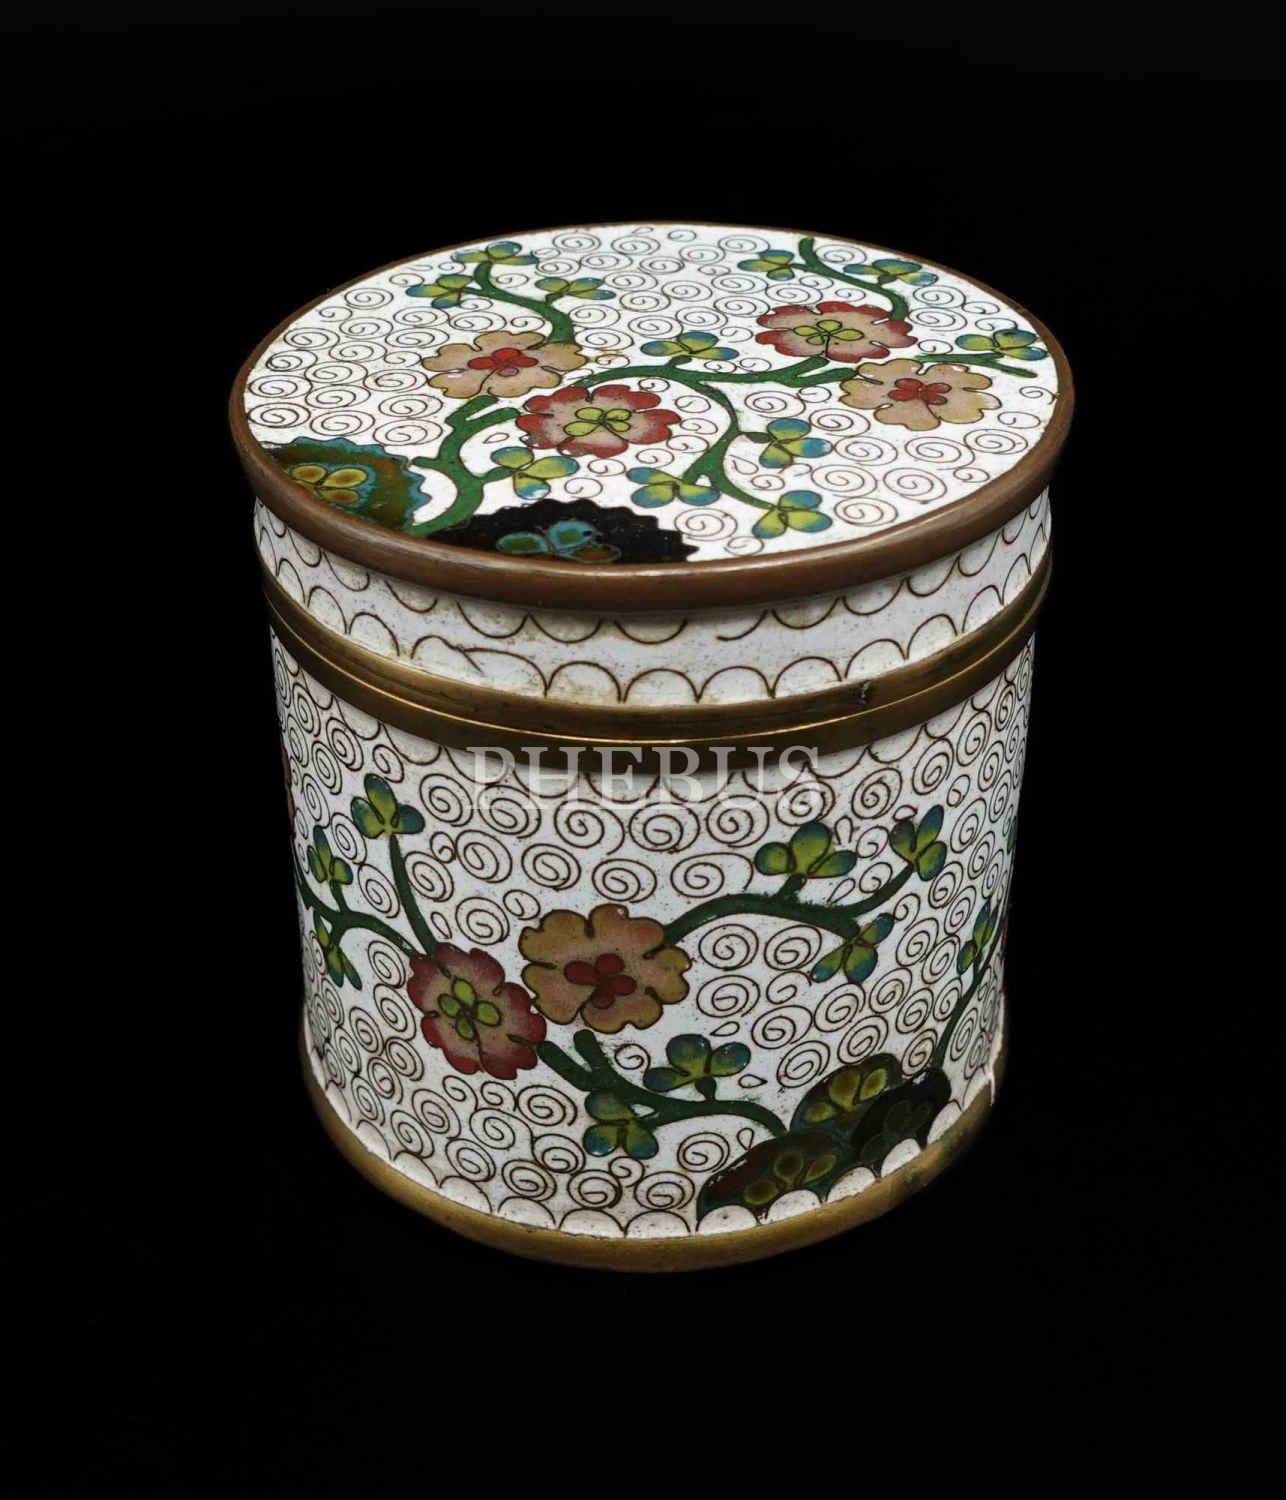 El boyama kiraz çiçeği motifleri ile süslenmiş pirinç collezione kutu, 8x8 cm...